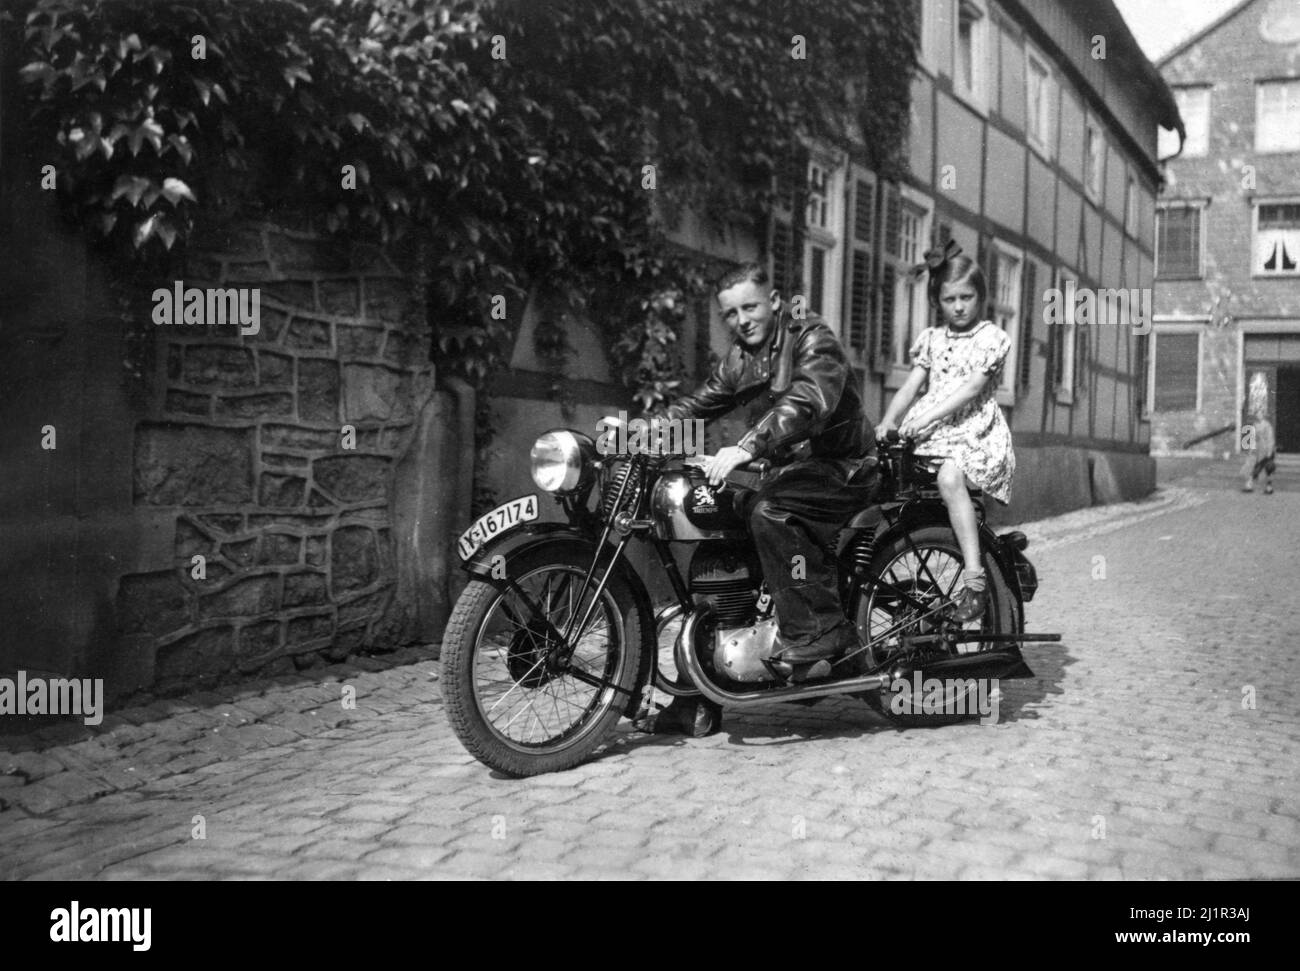 Giovane uomo e giovane ragazza su Triumph Motorcycle. Immagine vintage dalla Germania nel 1940s Foto Stock